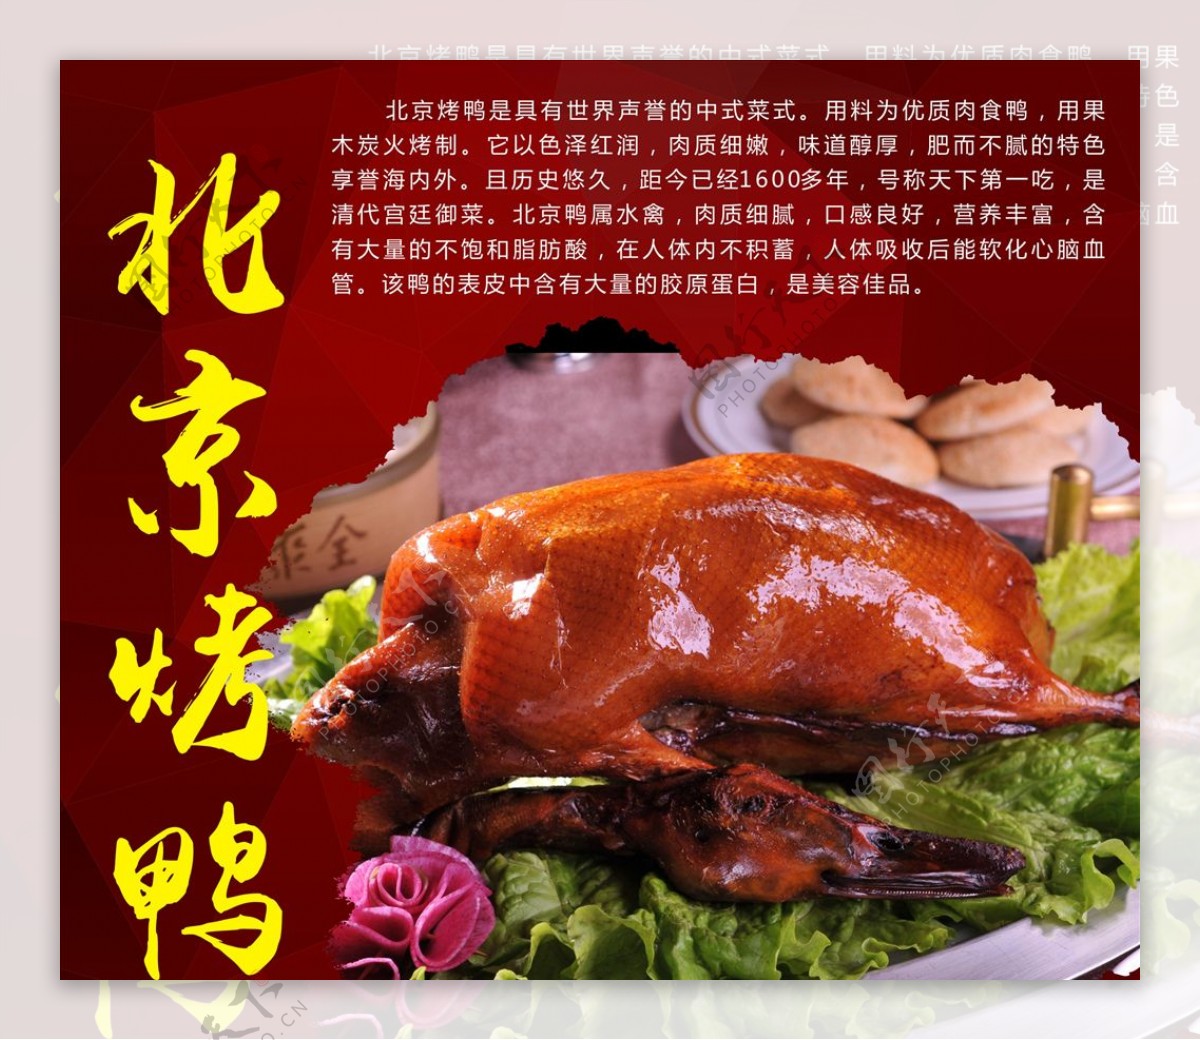 北京烤鸭烧鸭展架烧鸭宣传海